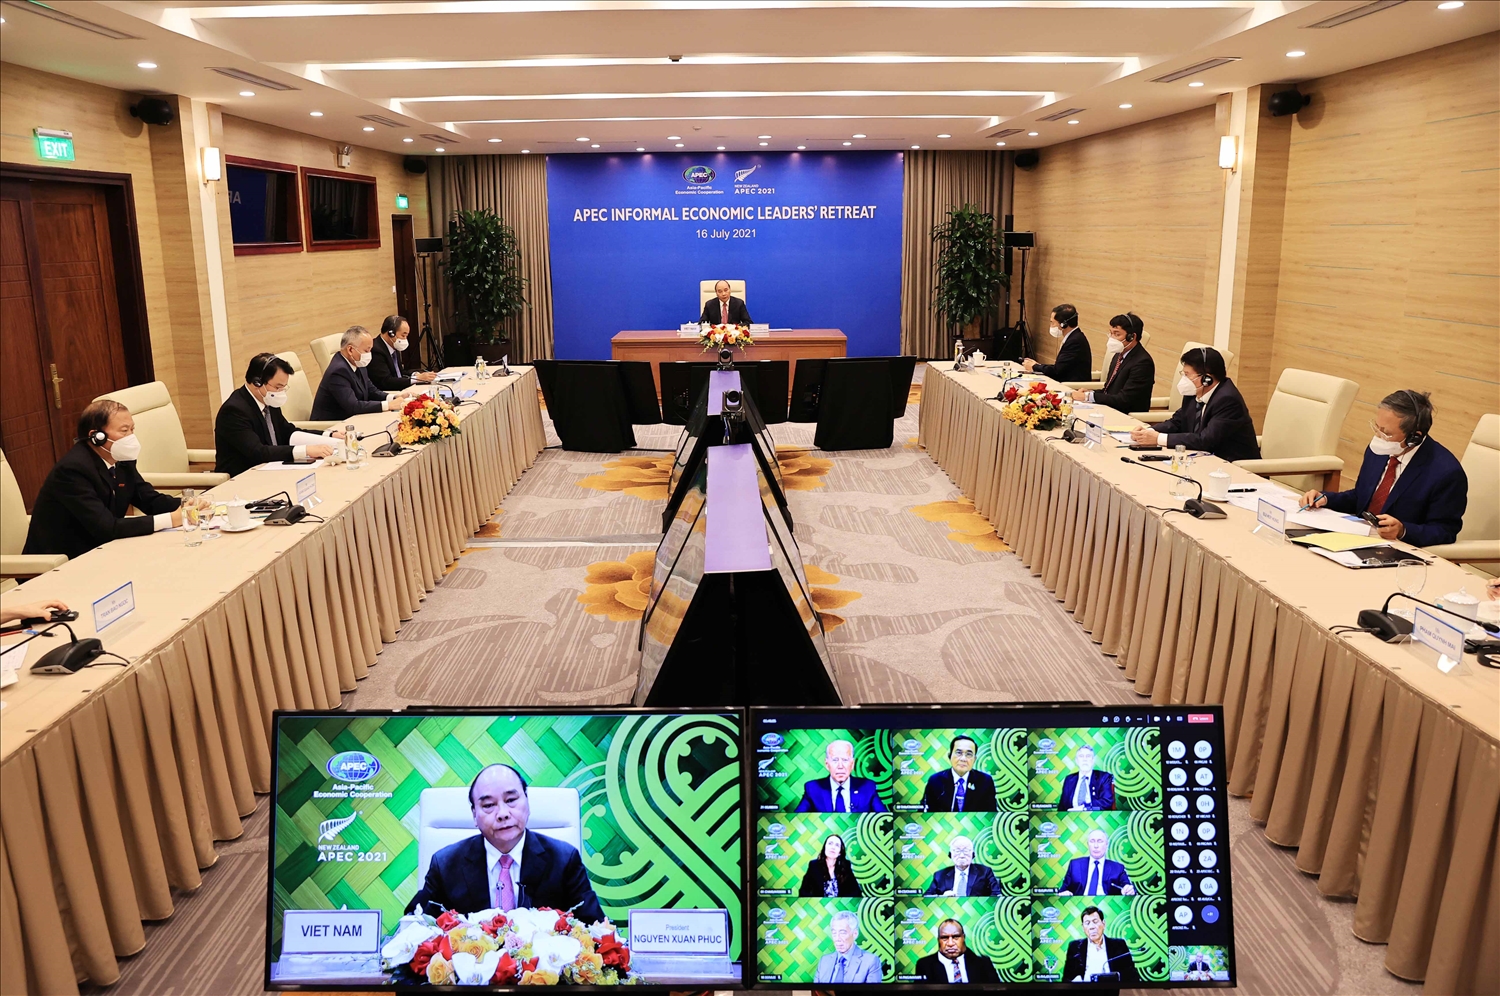 Chủ tịch nước Nguyễn Xuân Phúc: Việt Nam luôn trân trọng hợp tác APEC và sẽ cùng các thành viên thúc đẩy hợp tác trên tinh thần cùng phòng ngừa dịch bệnh. Ảnh: VGP